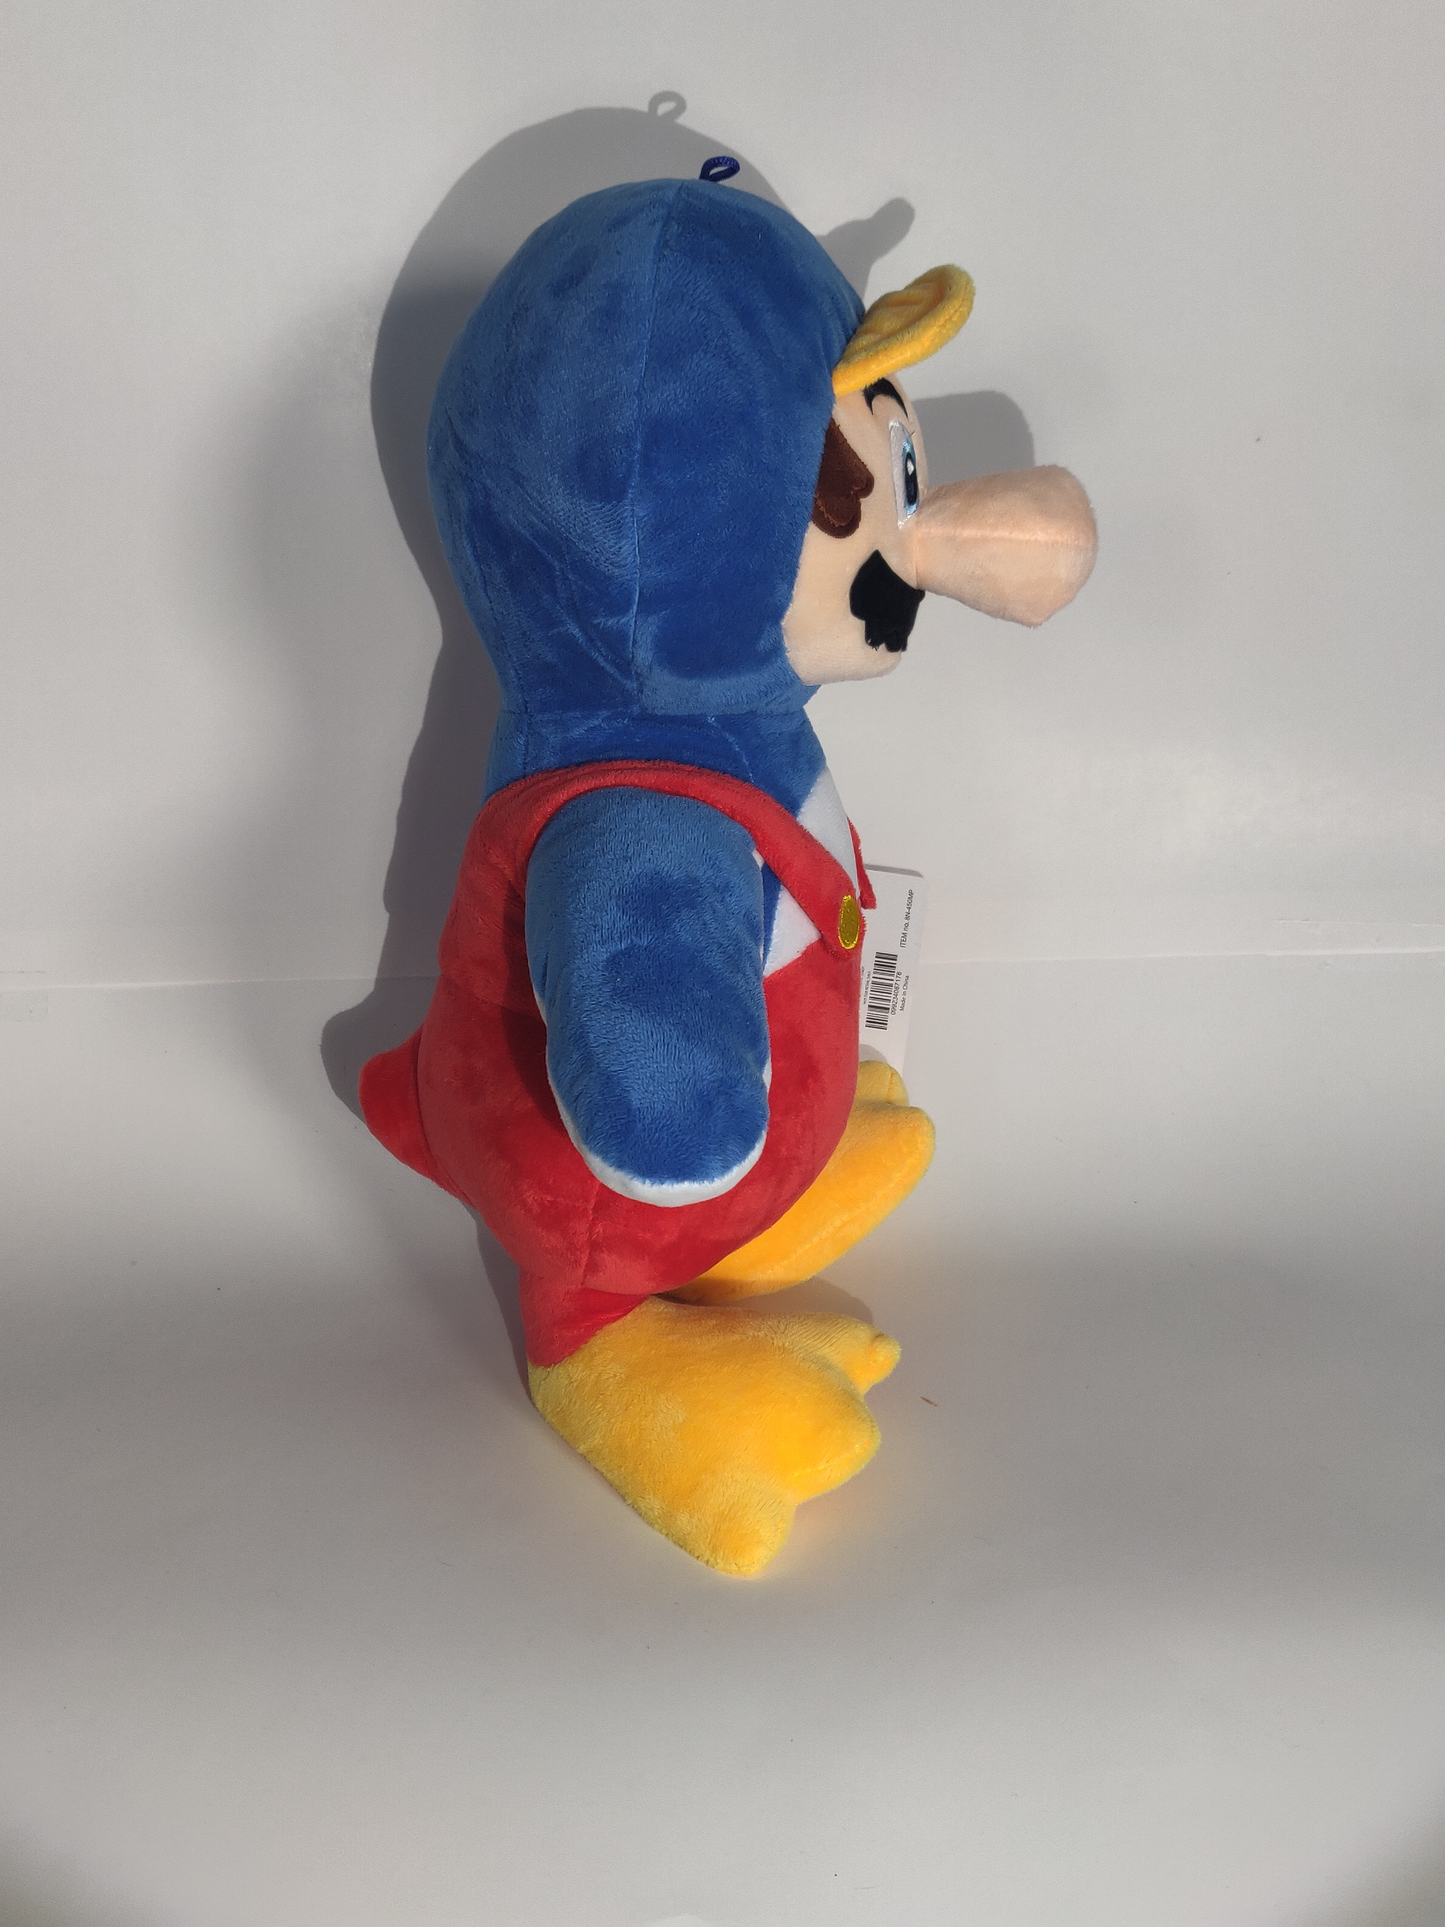 Penguin Mario plush